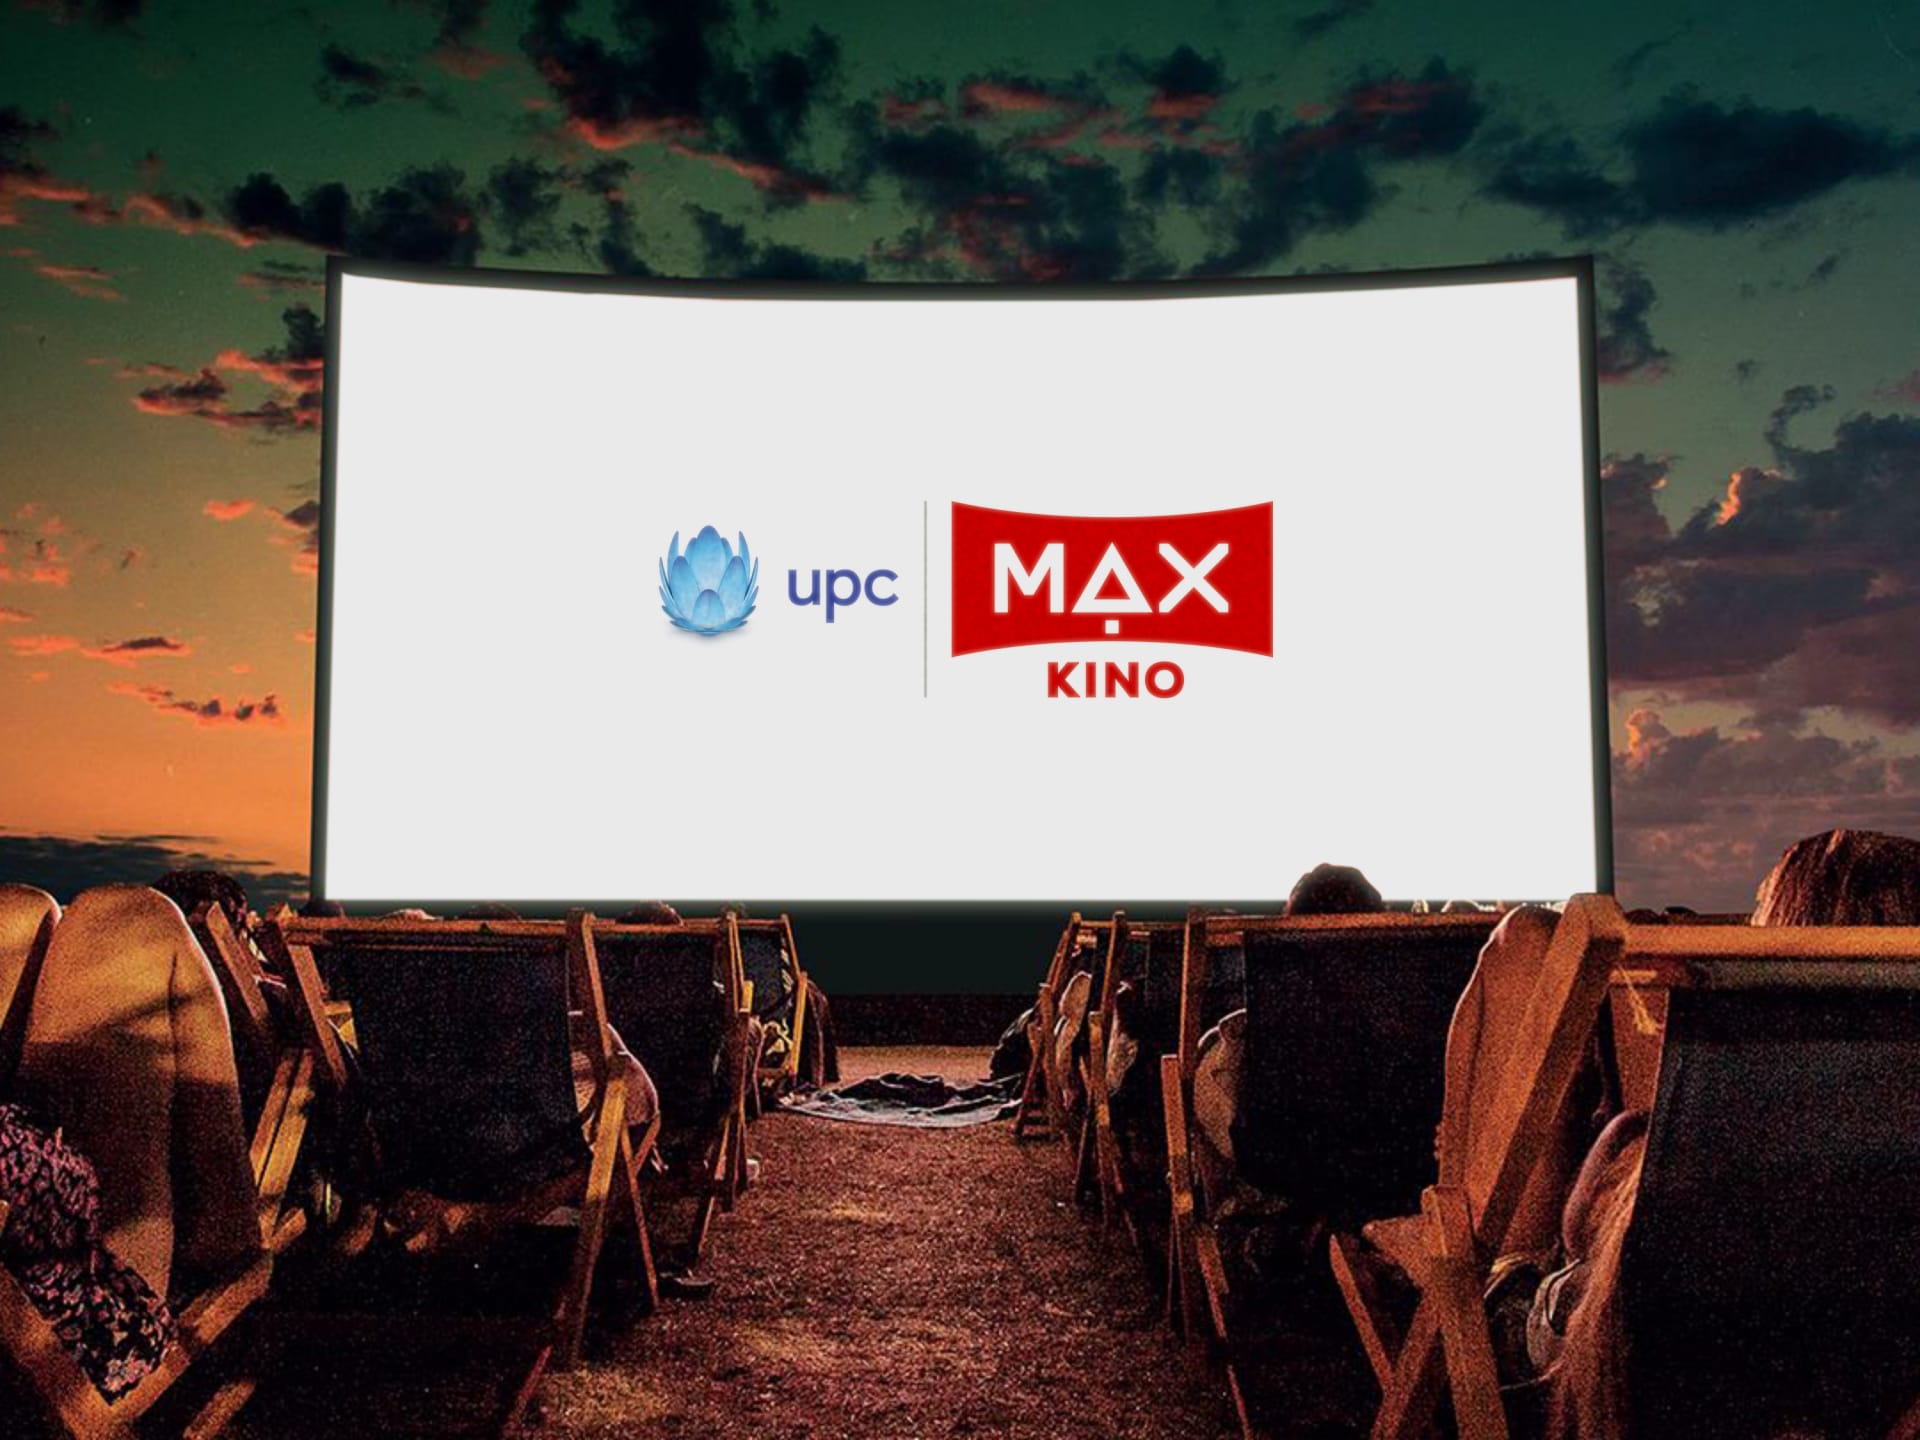 UPC MAX kino